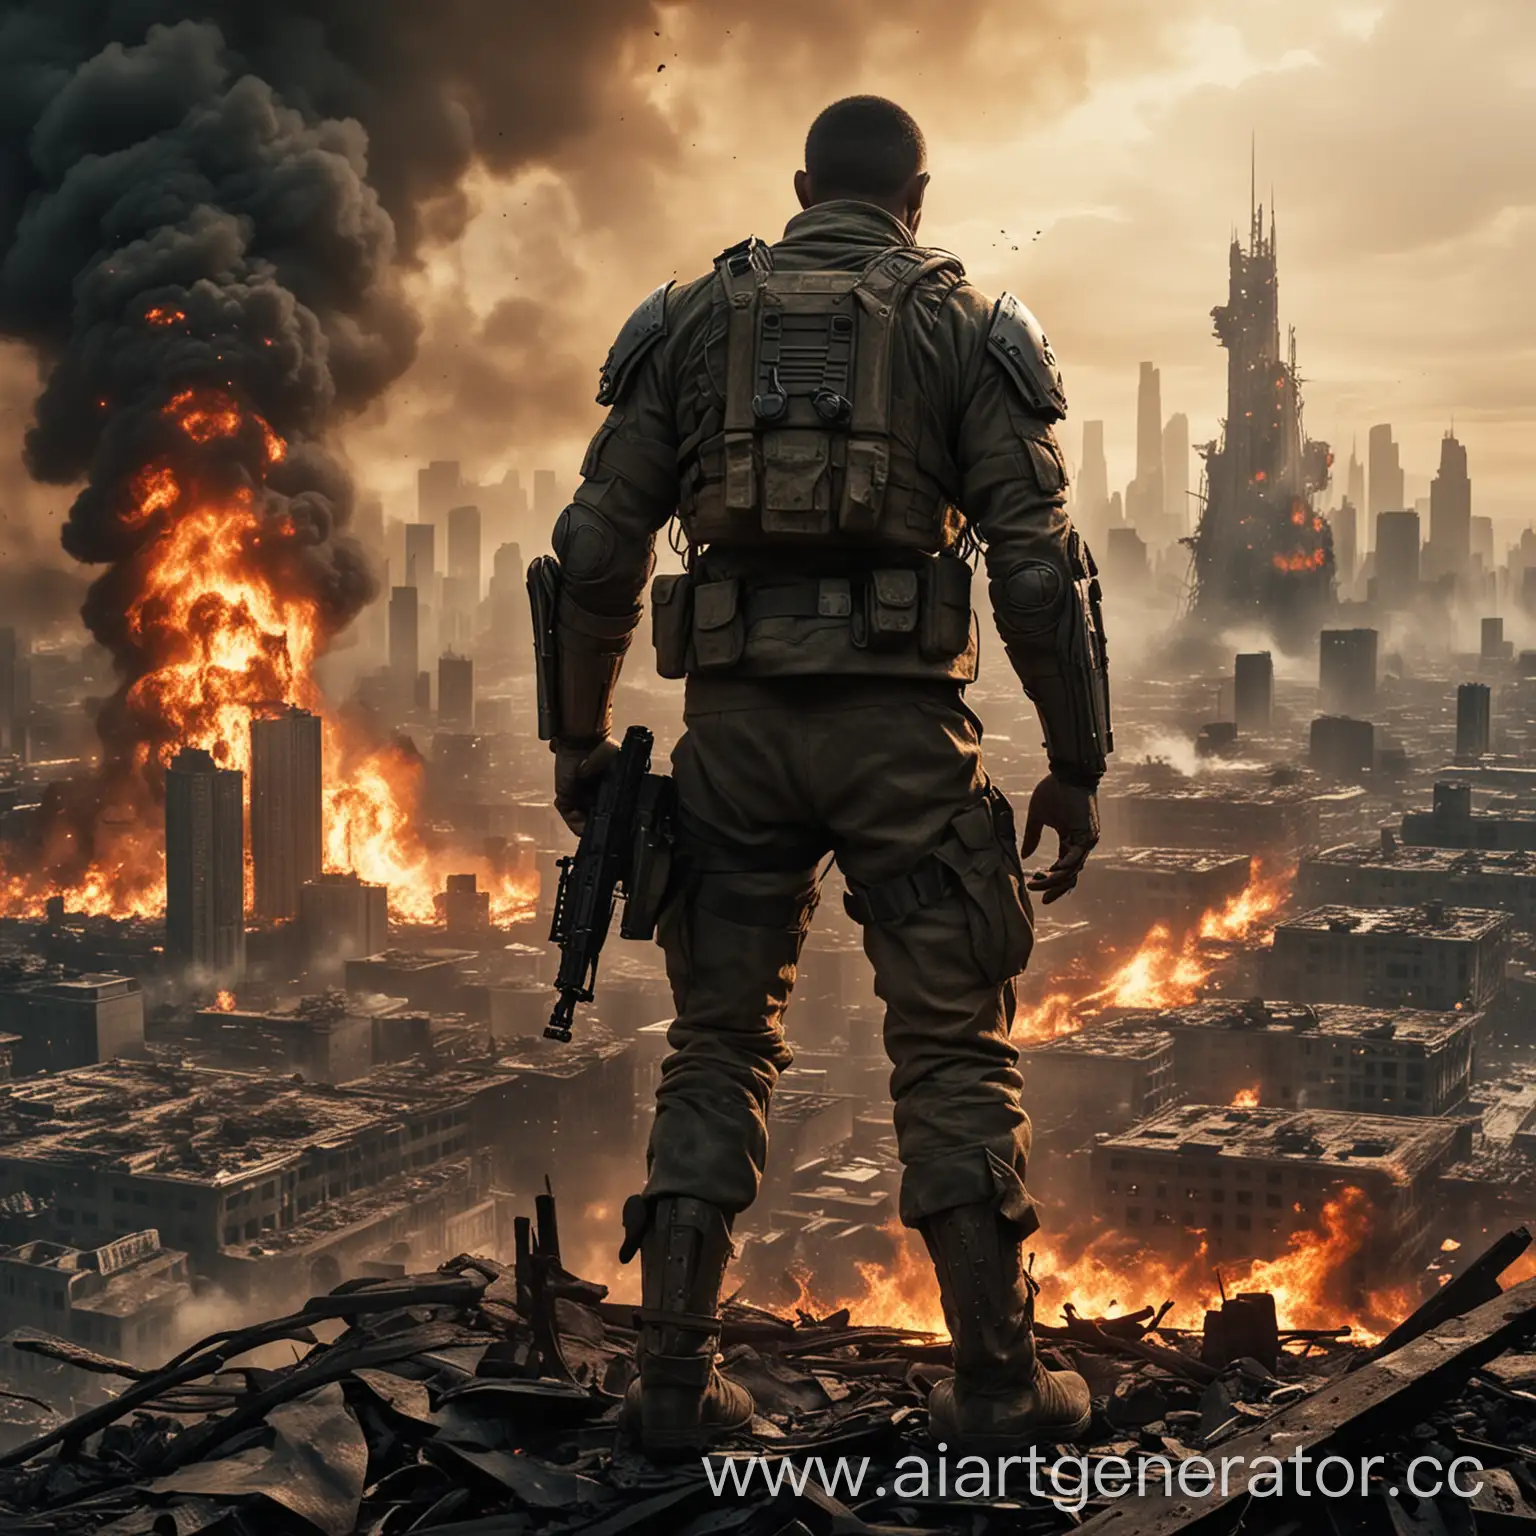 Хочу видеть мужчину солдата потрёпанного войной но мужественным на фоне горящего города будущего